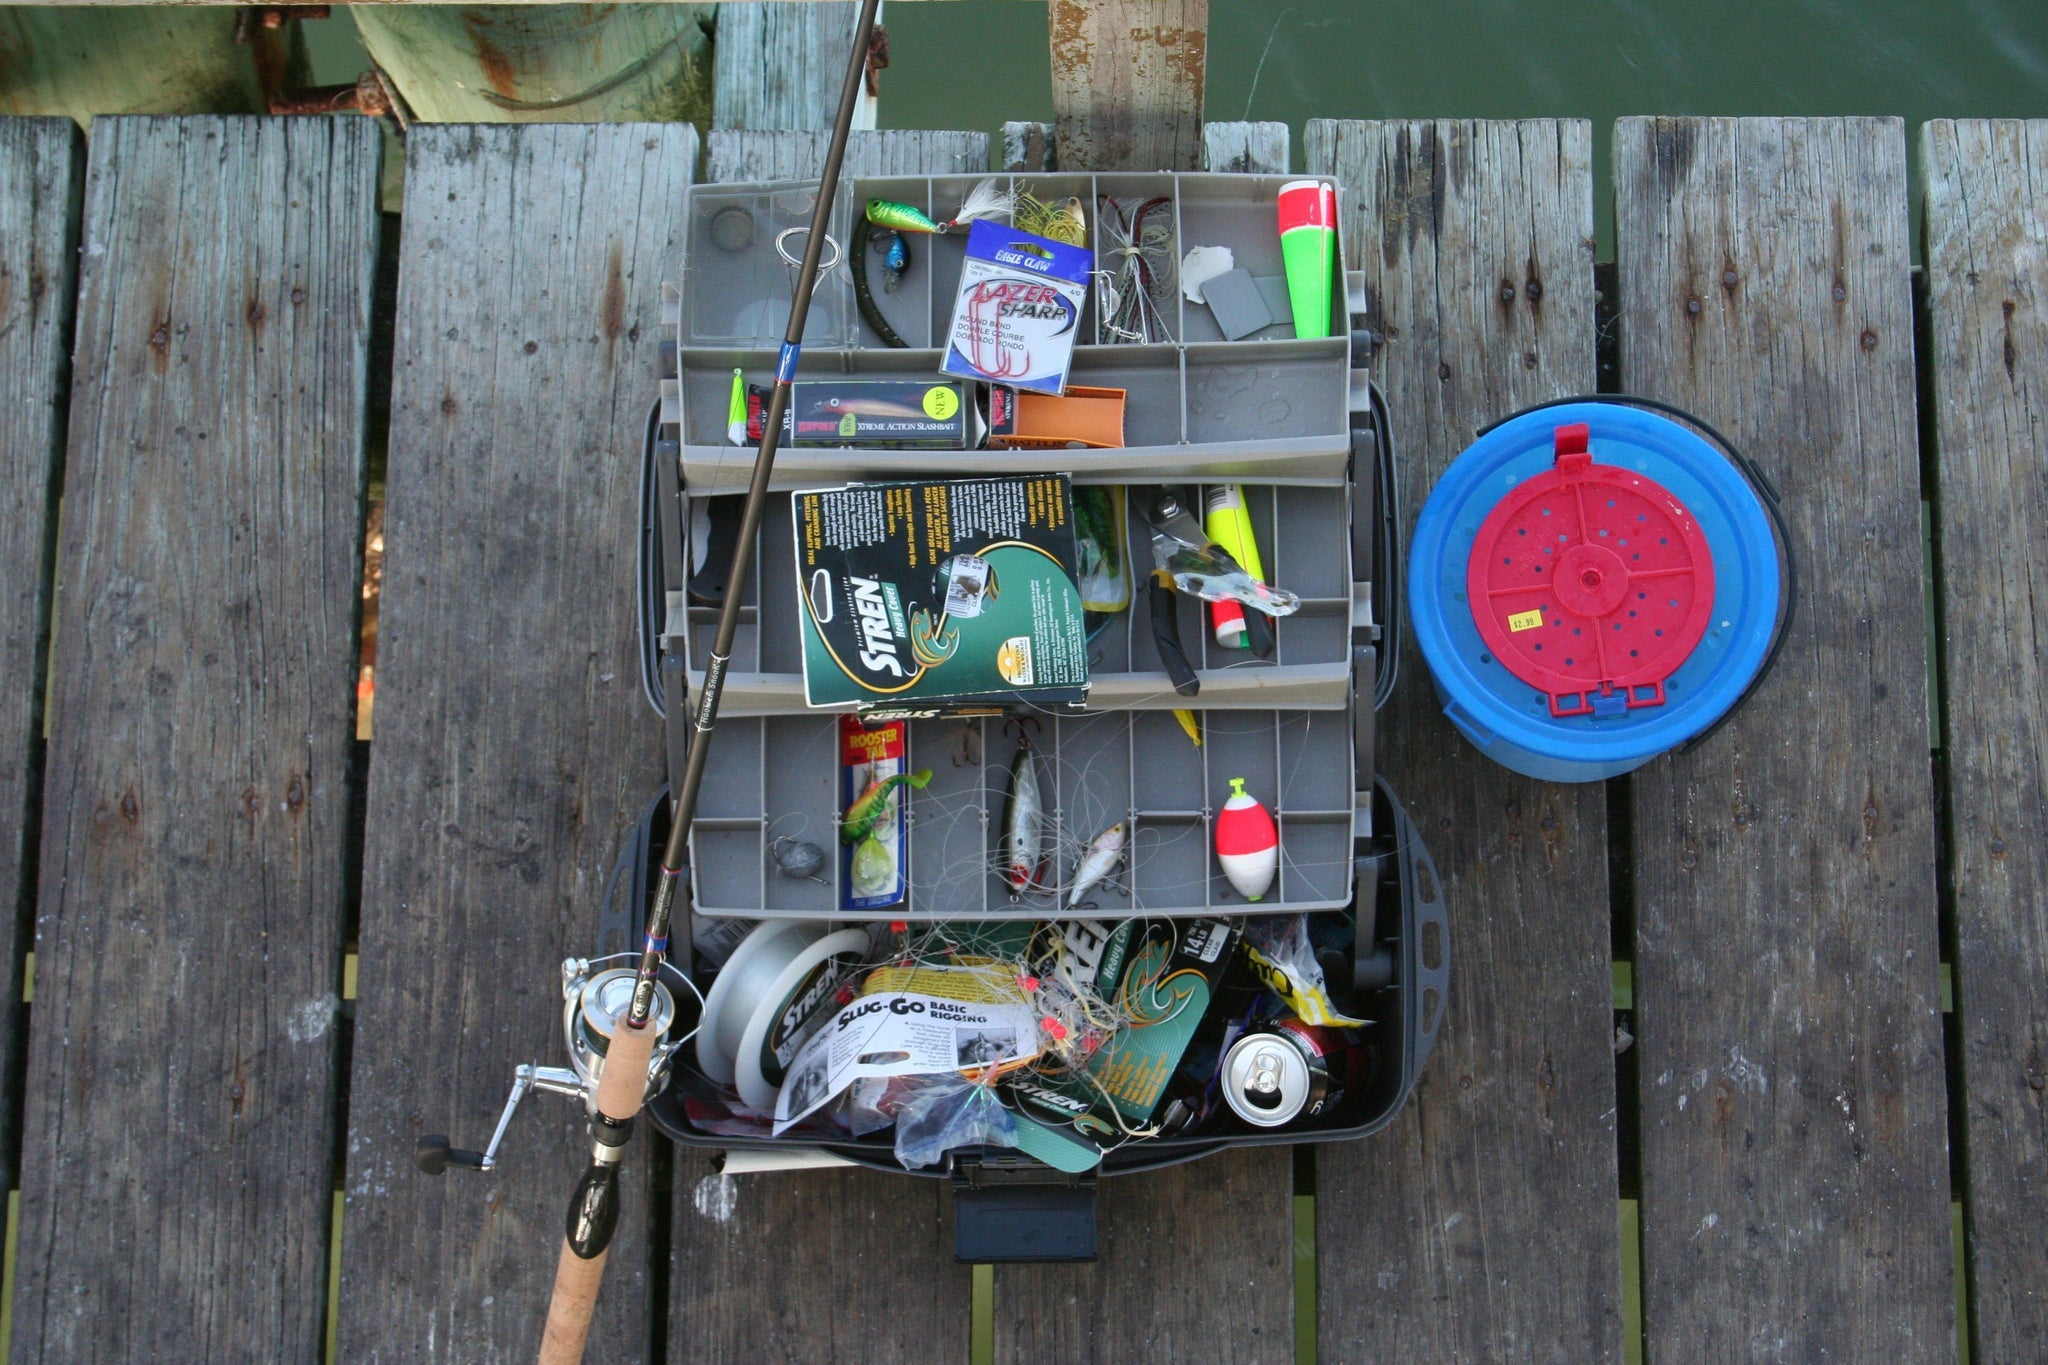 fishing tackle box checklist